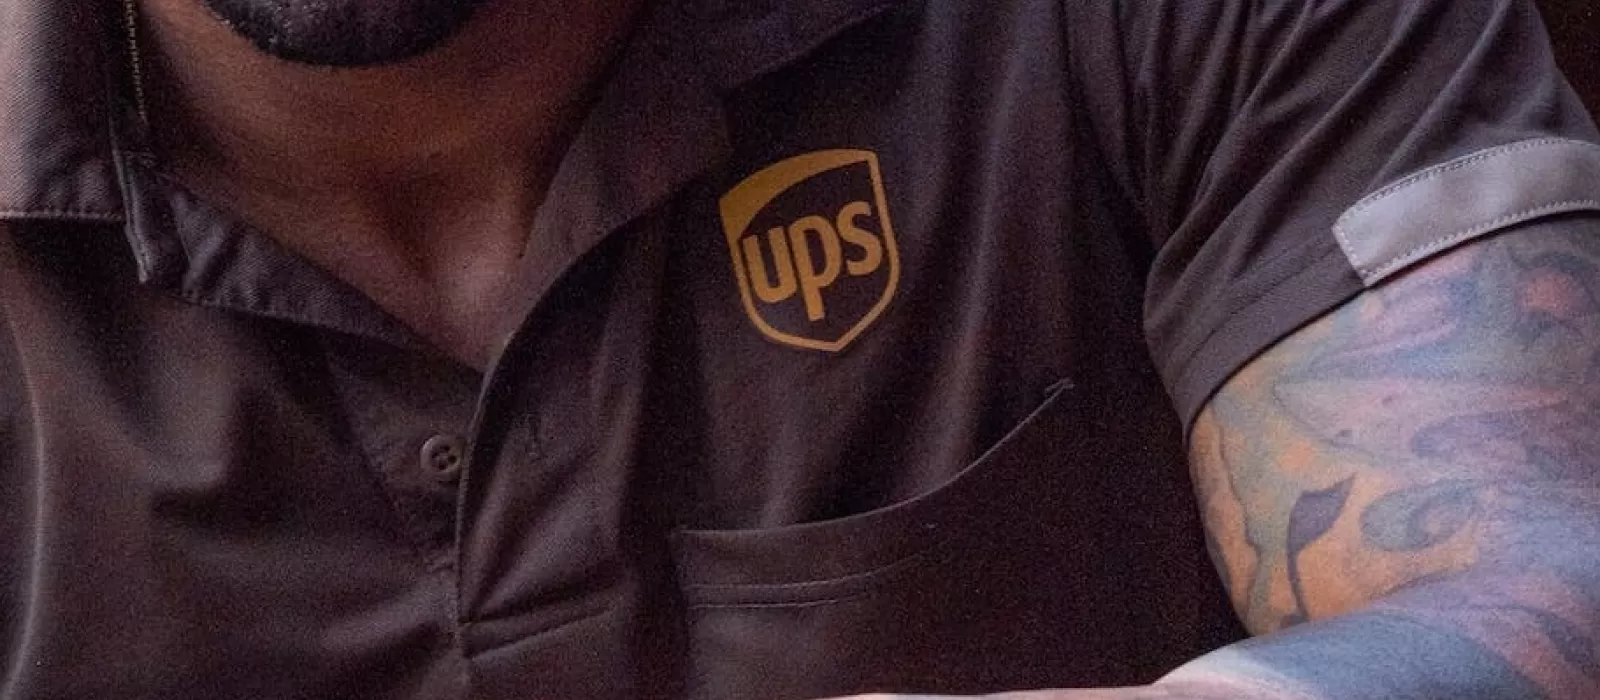 اكتشفوا أبرز خدمات البريد والشحن UPS التي قد لا تعرفونها!